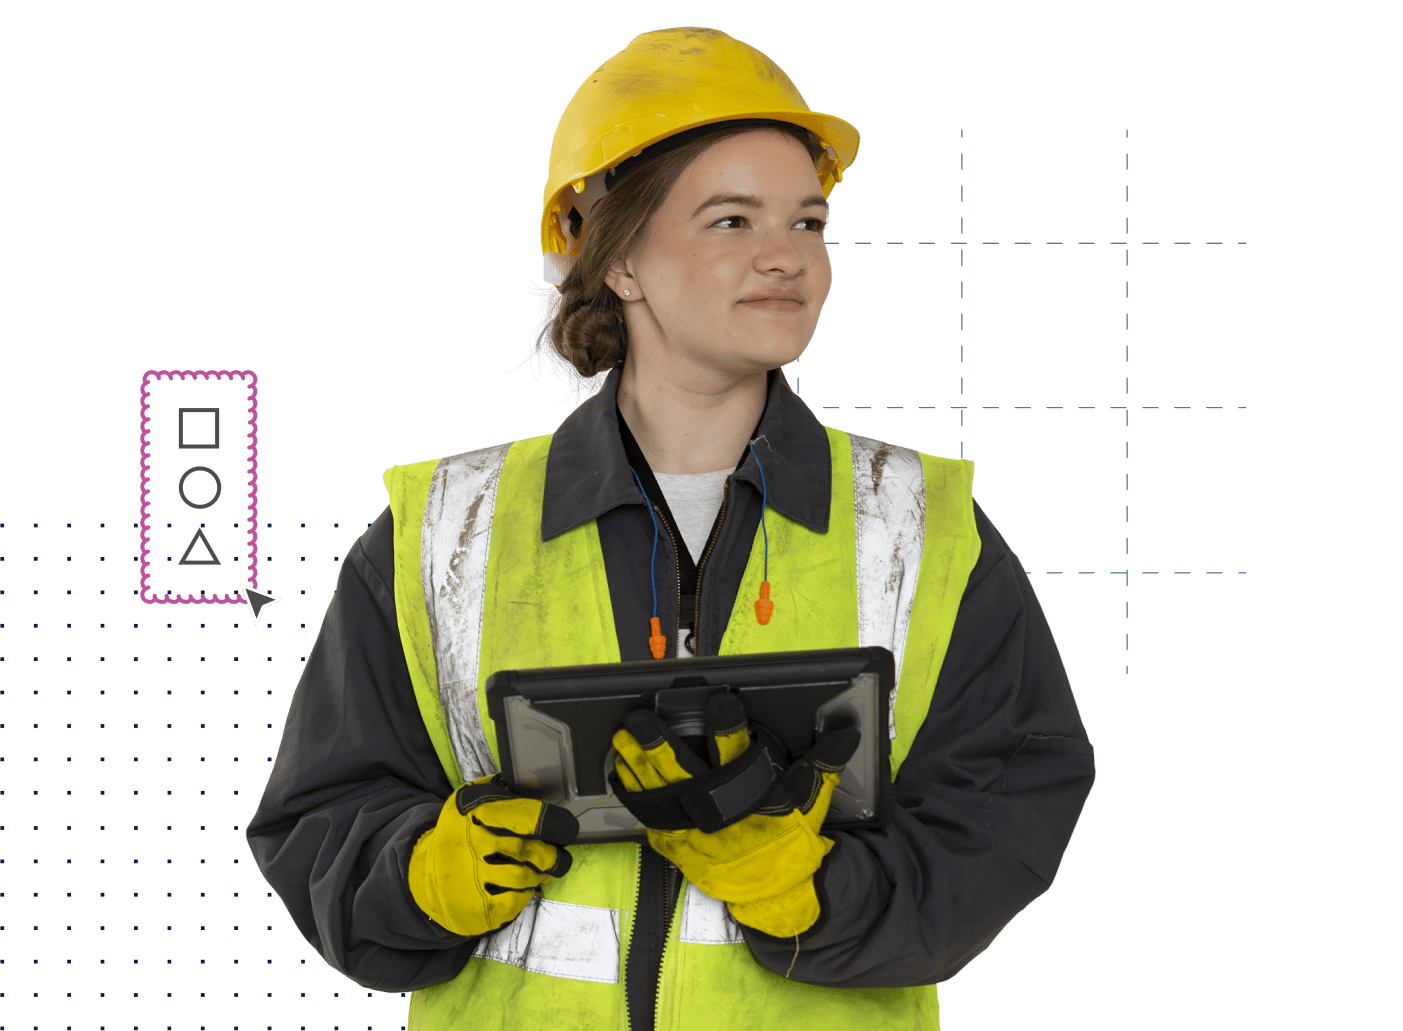 조끼, 안전모, 장갑을 끼고 태블릿을 들고 있는 건설 하청업체 여성 작업자